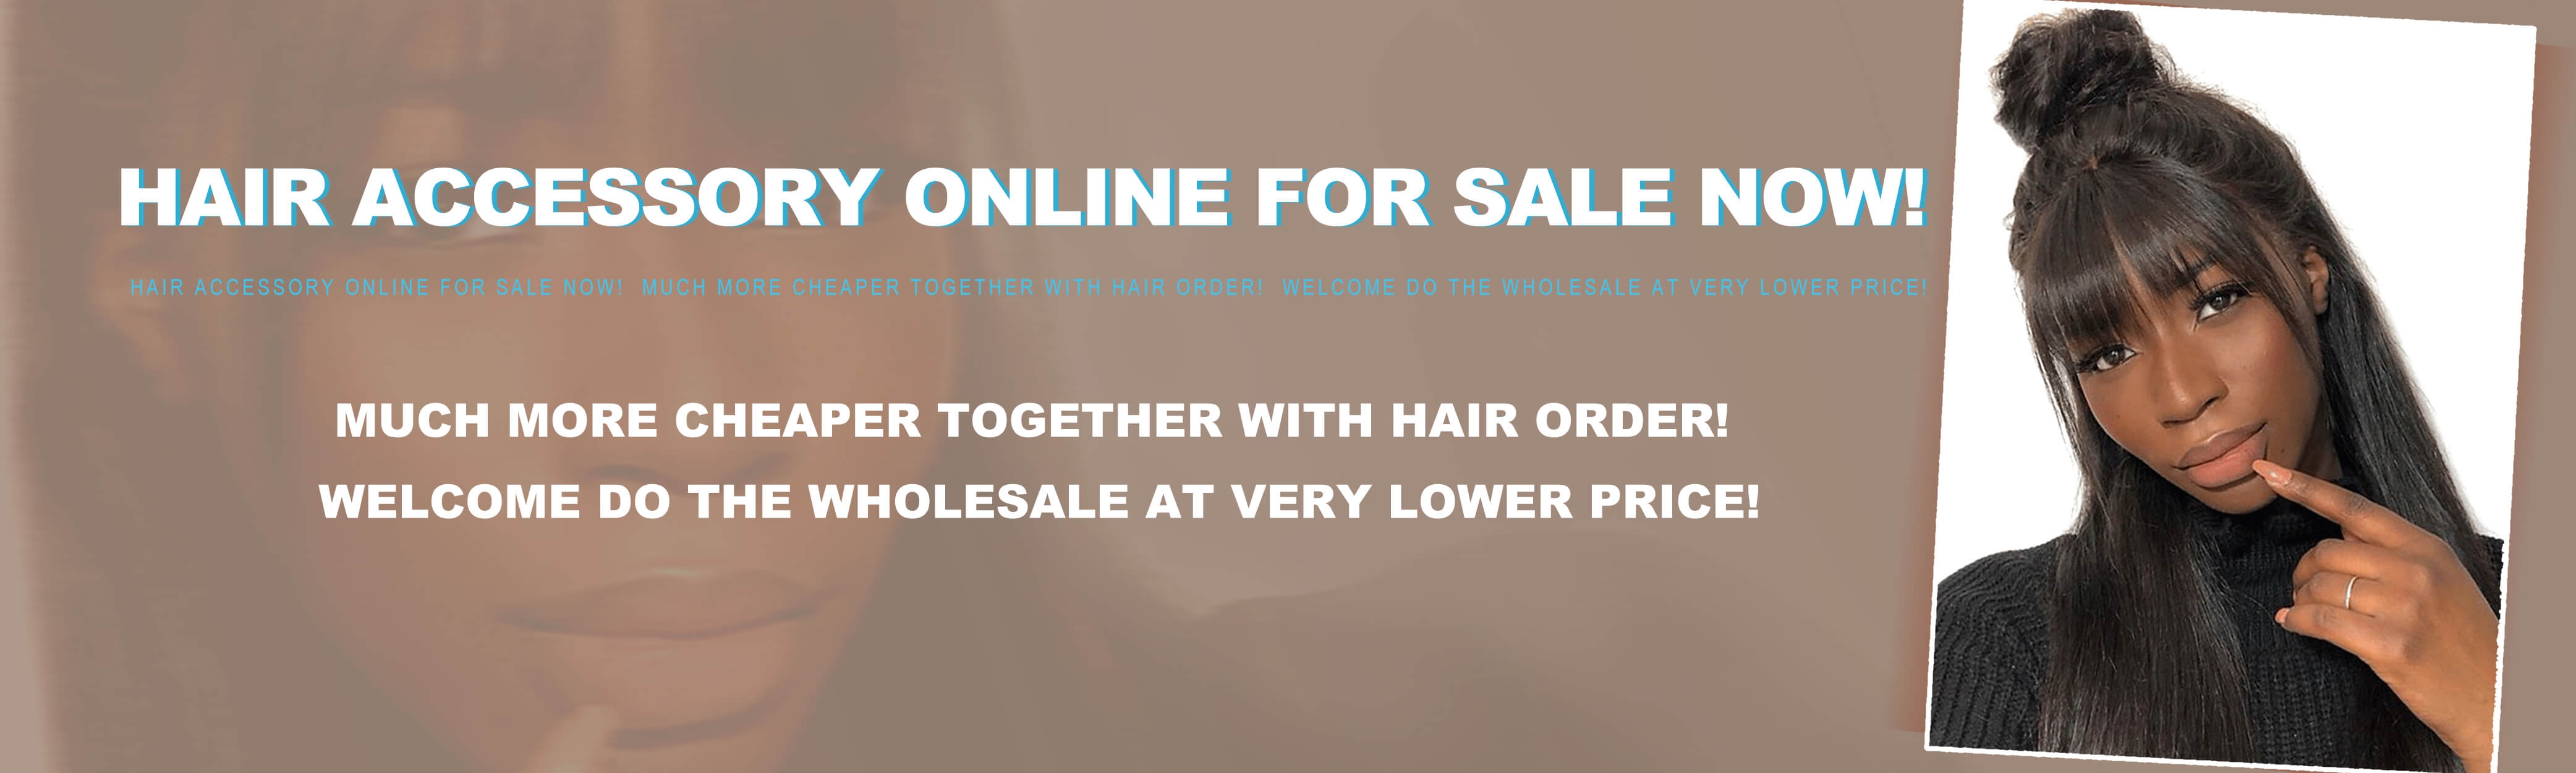 hman hair pieces for women online sale 